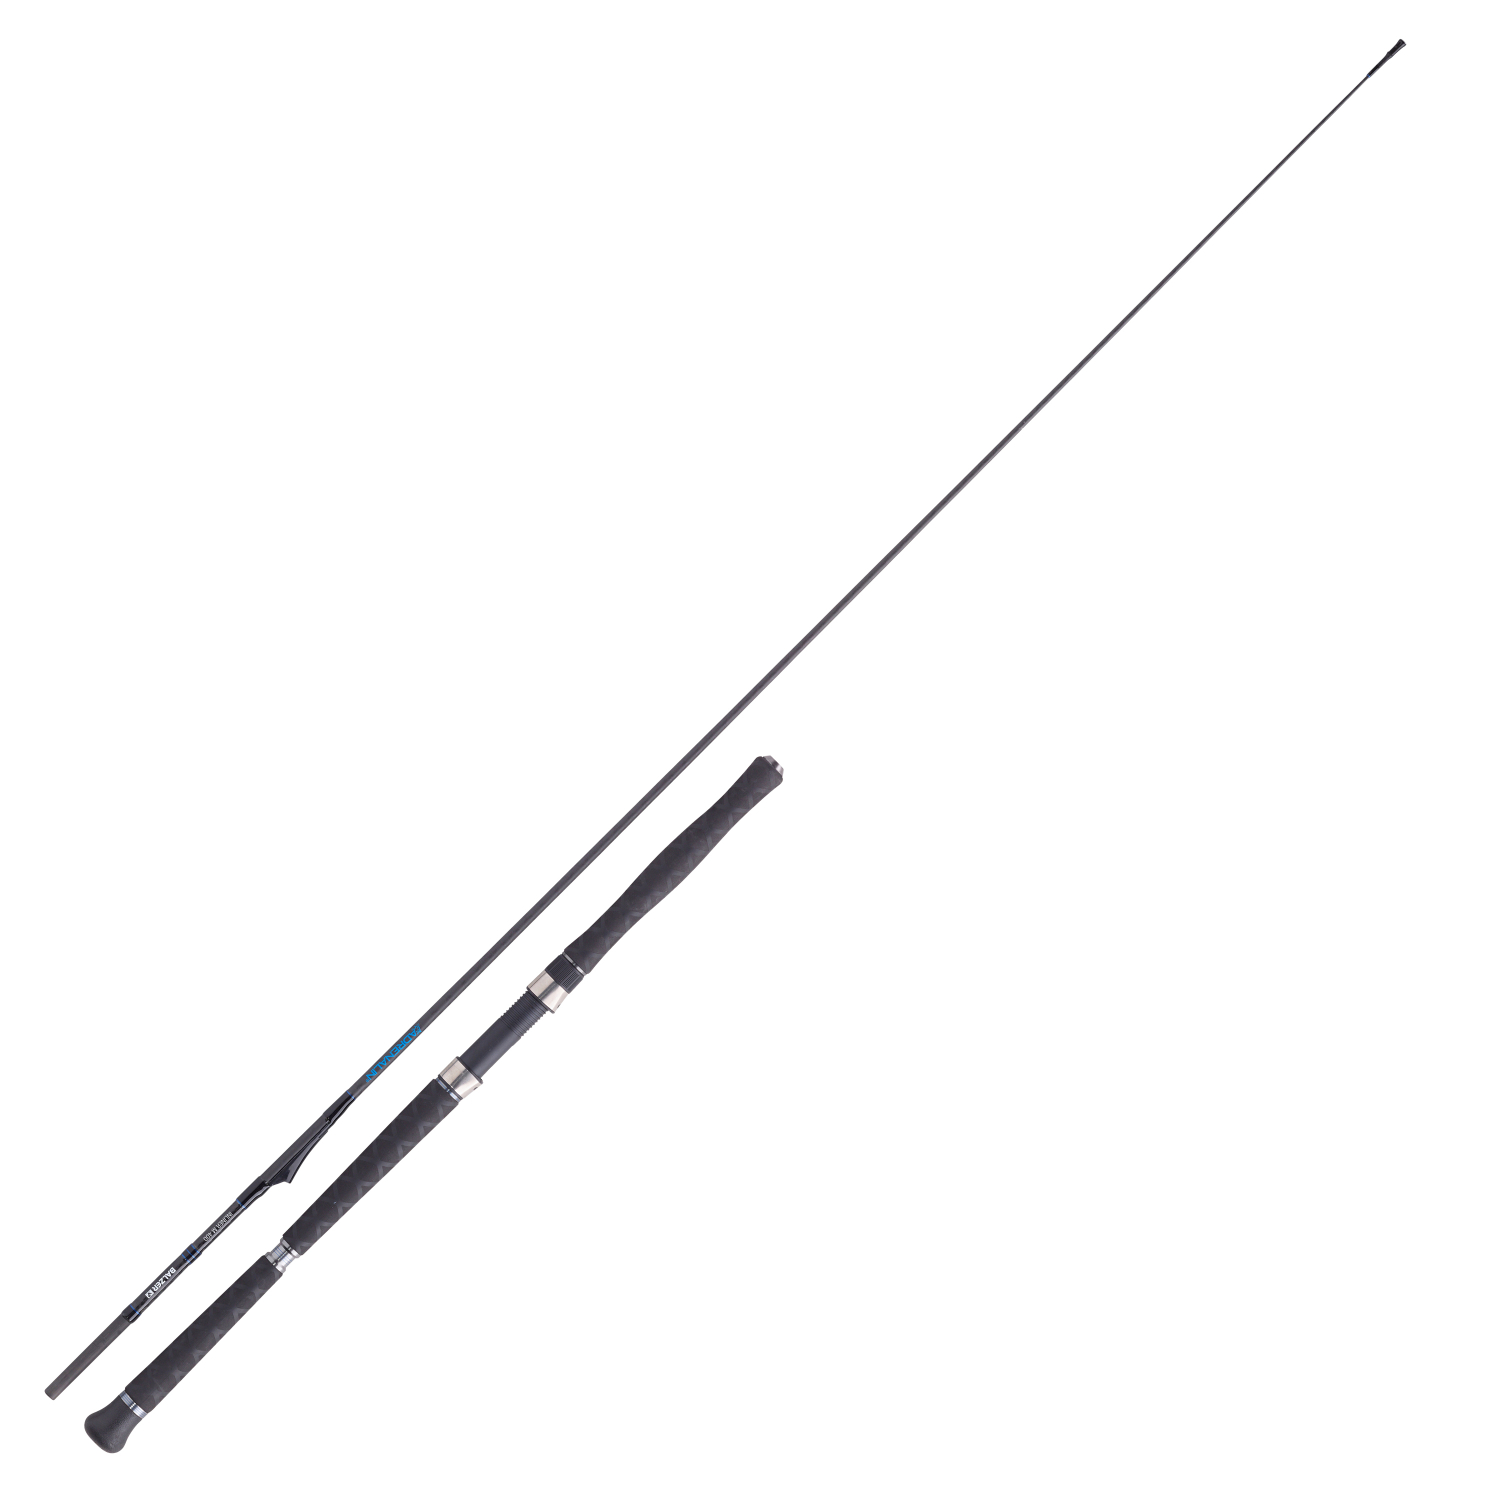 Adrenalin Sea Fishing Rod Adrenalin® IM 12 Inline Medium 400 at low prices